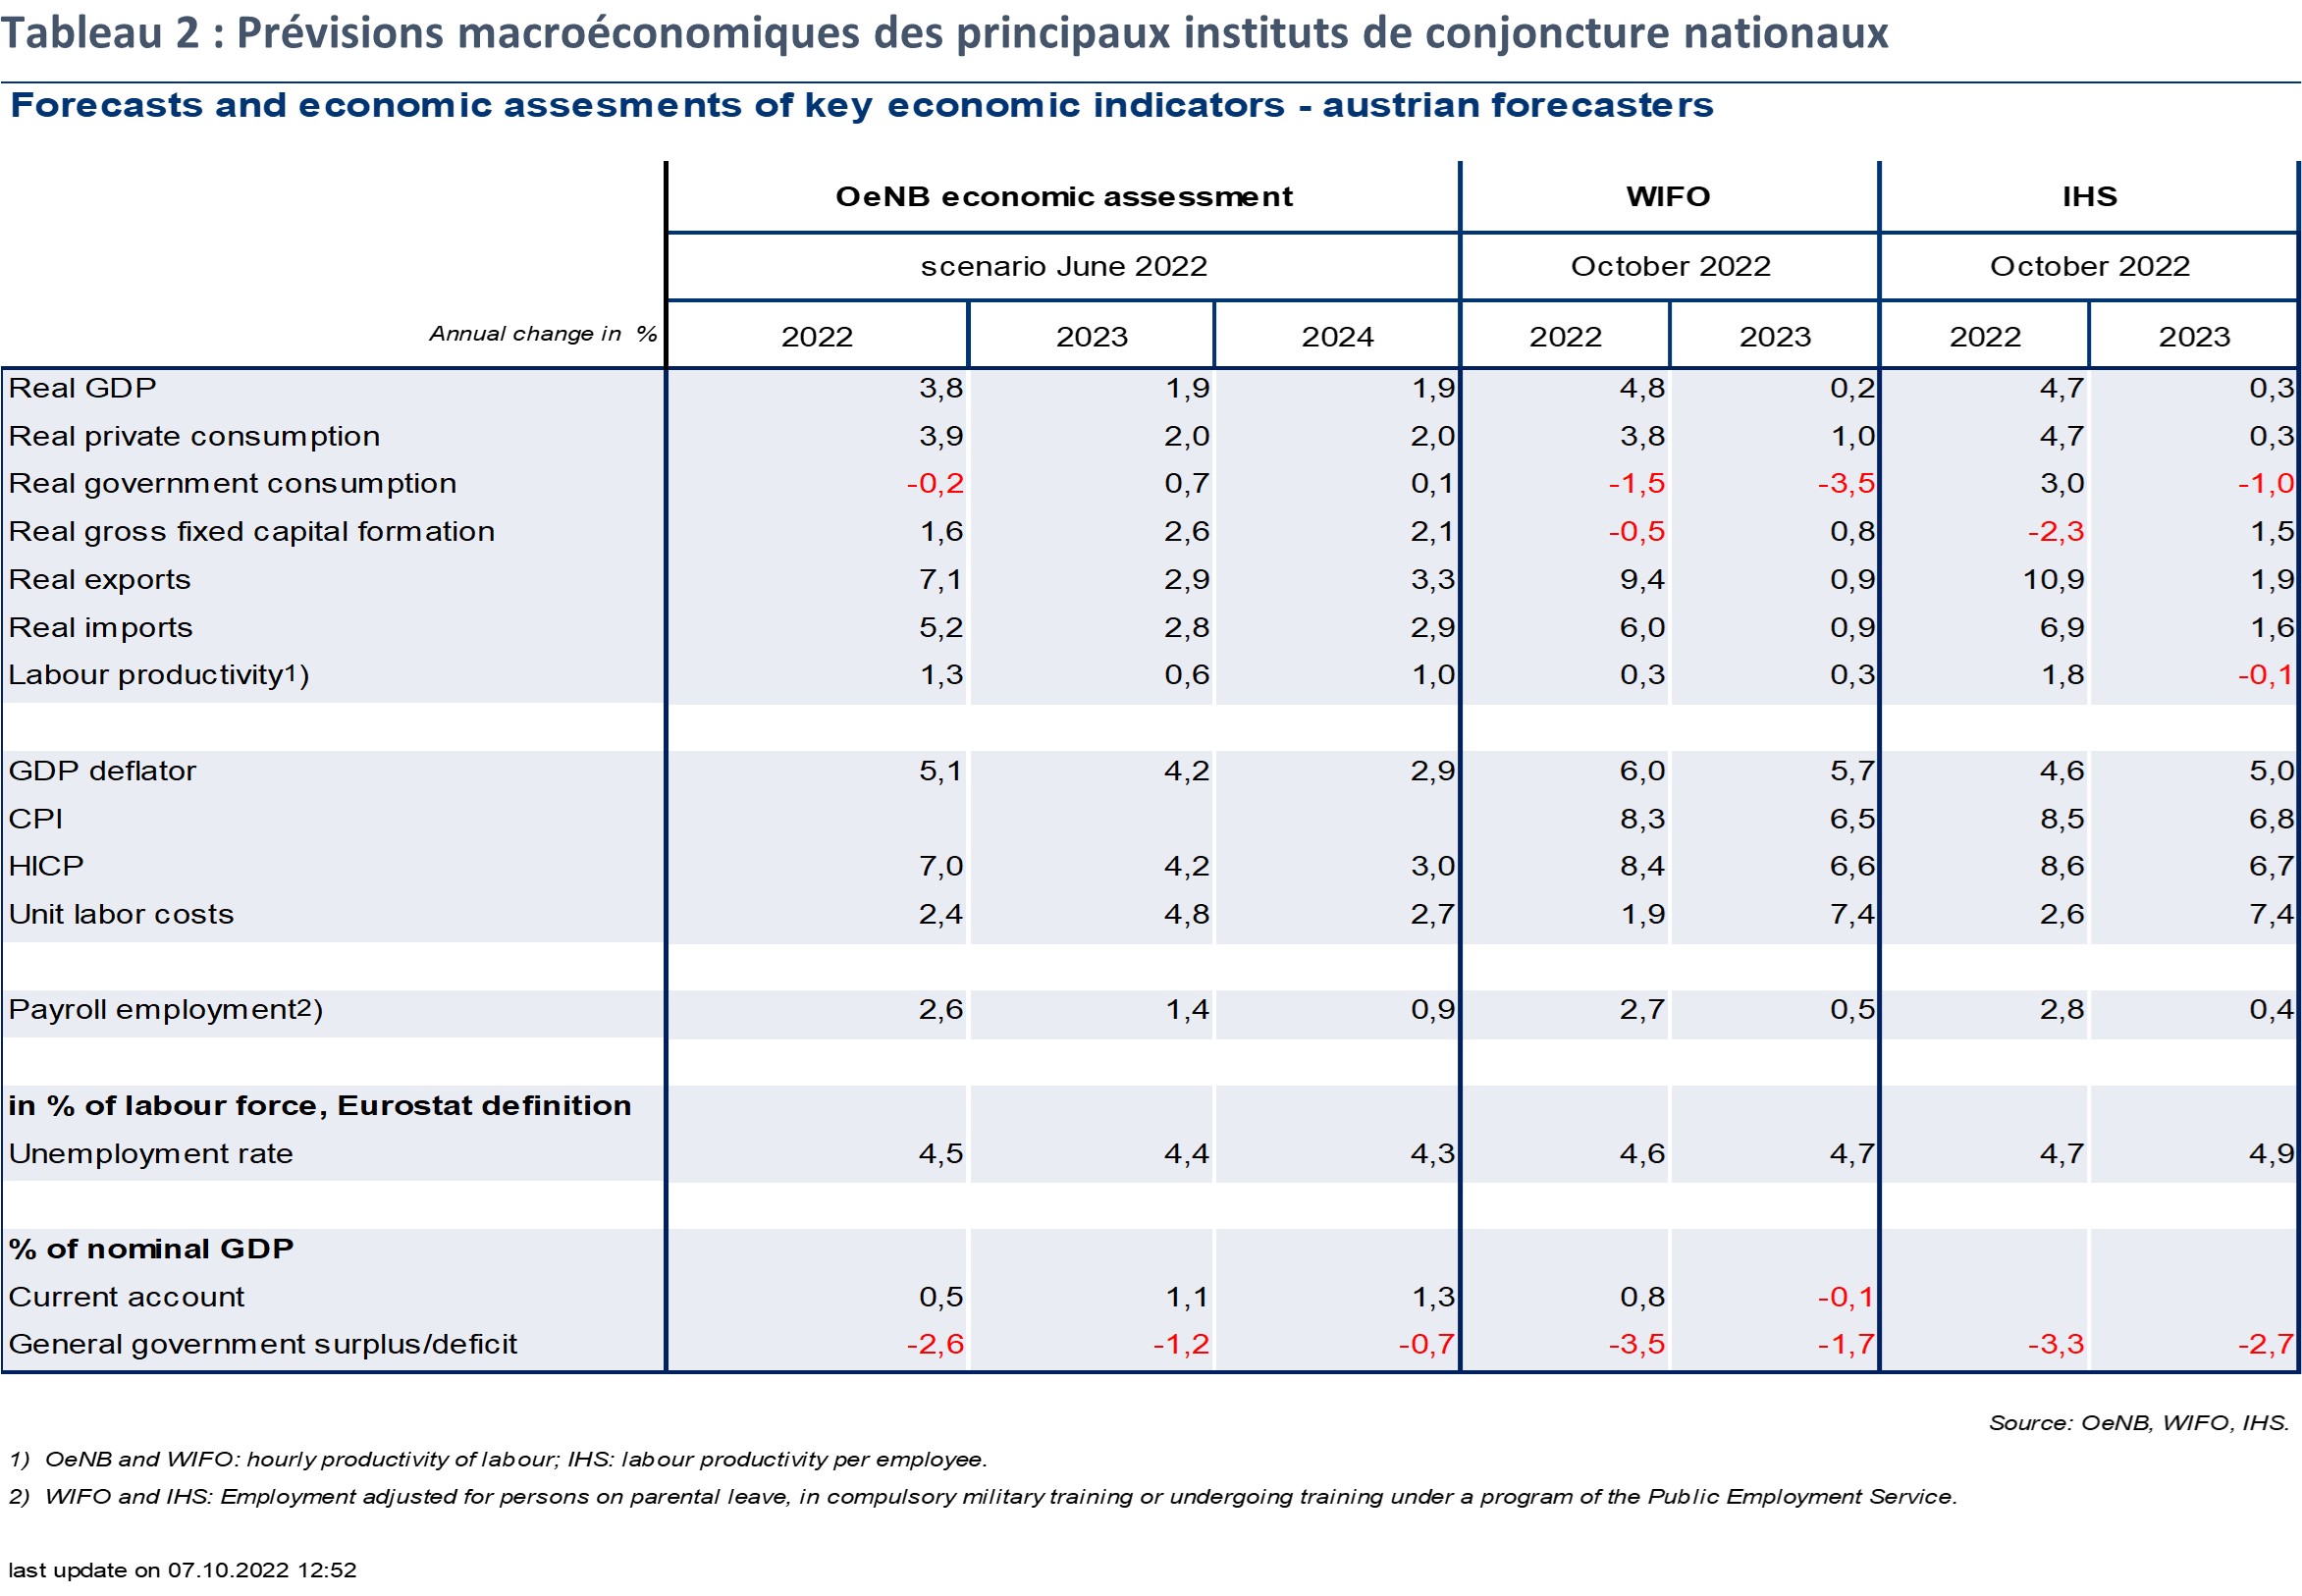 Prévisions macroéconomiques des instituts nationaux - 2022 à 2024